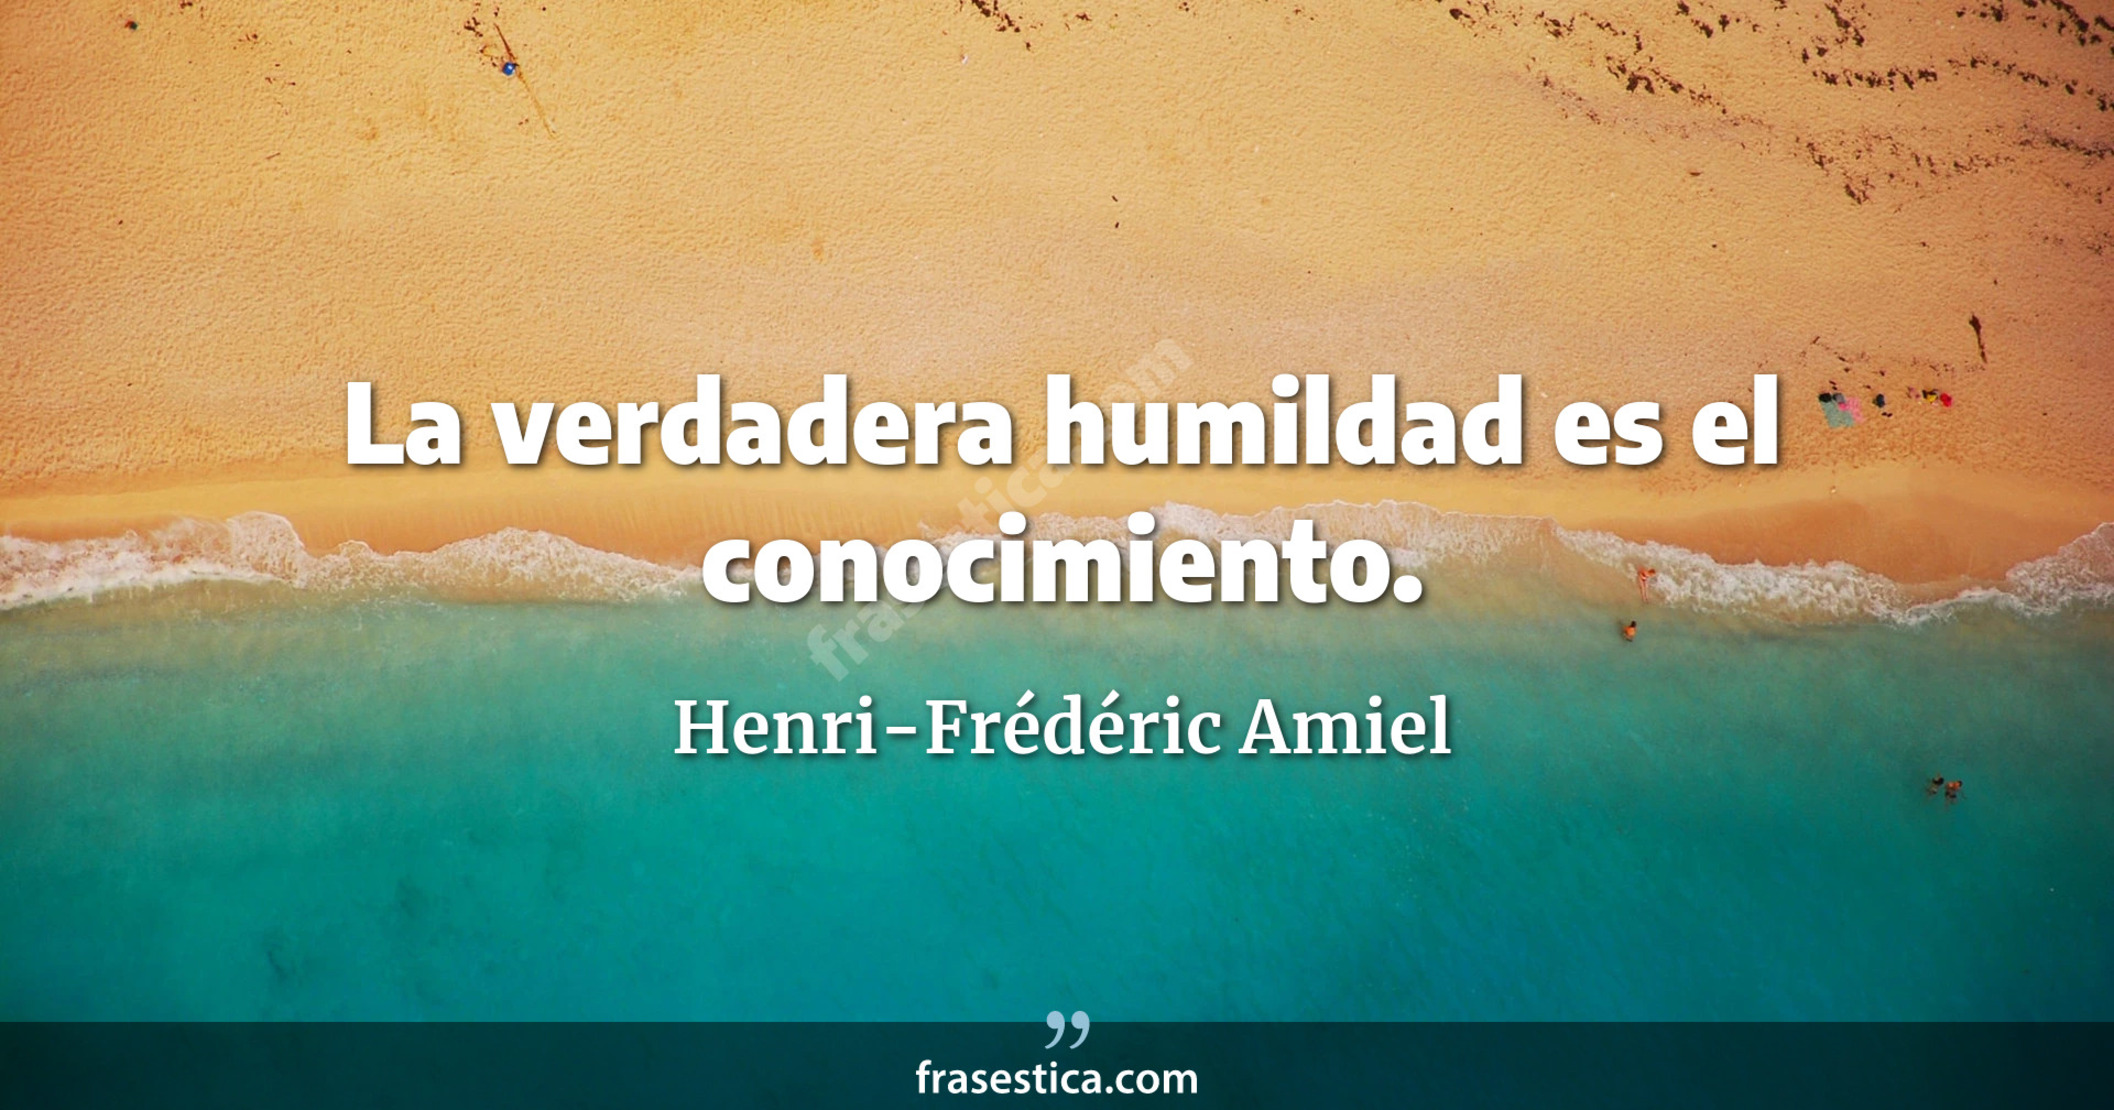 La verdadera humildad es el conocimiento. - Henri-Frédéric Amiel